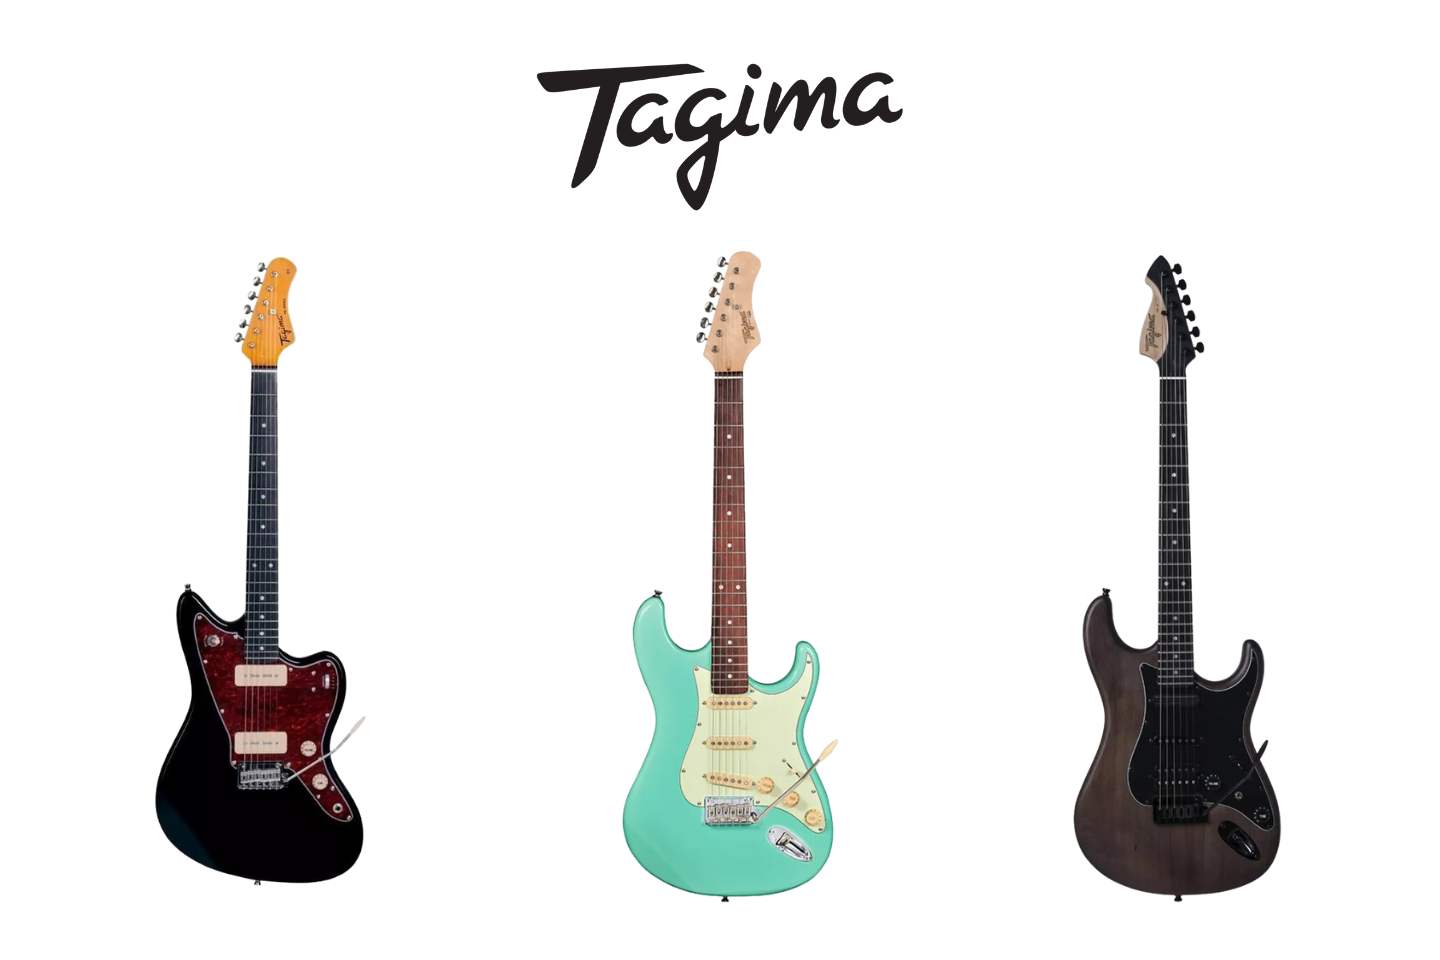 Alguns Modelos de Guitarras Tagima